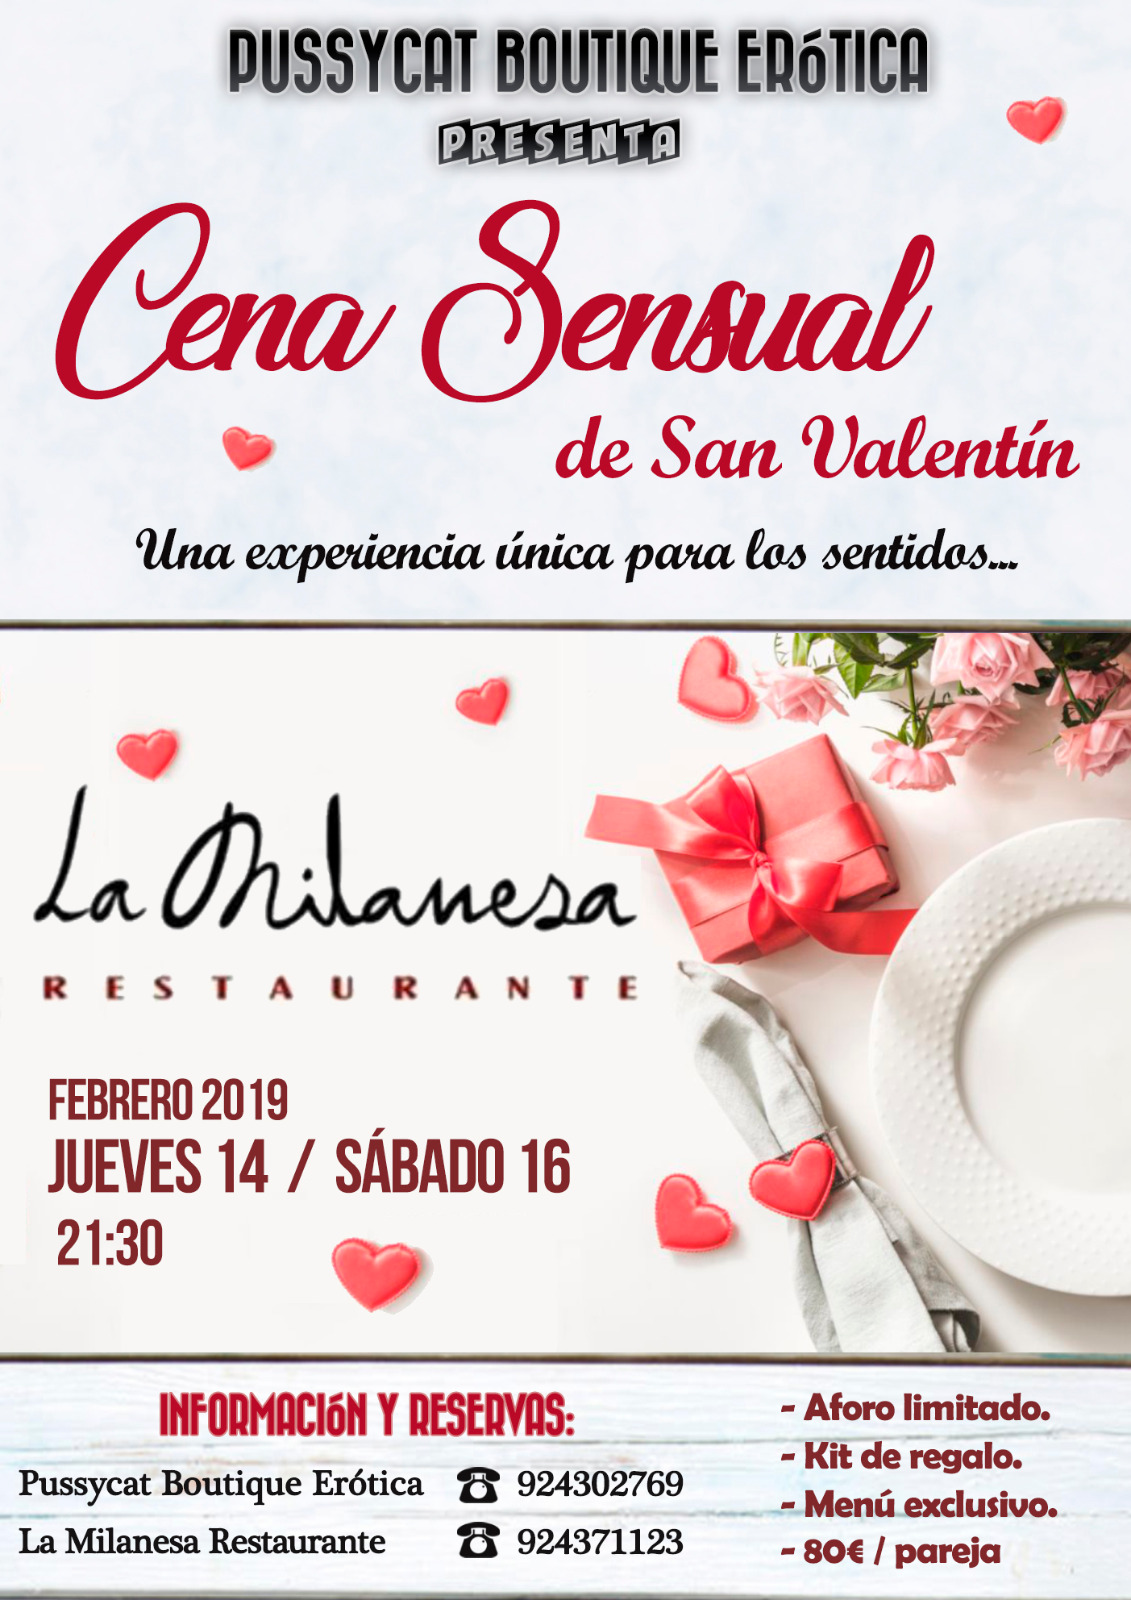 Cartel informativo de cena sensual de San Valentín en restaurante La Milanesa